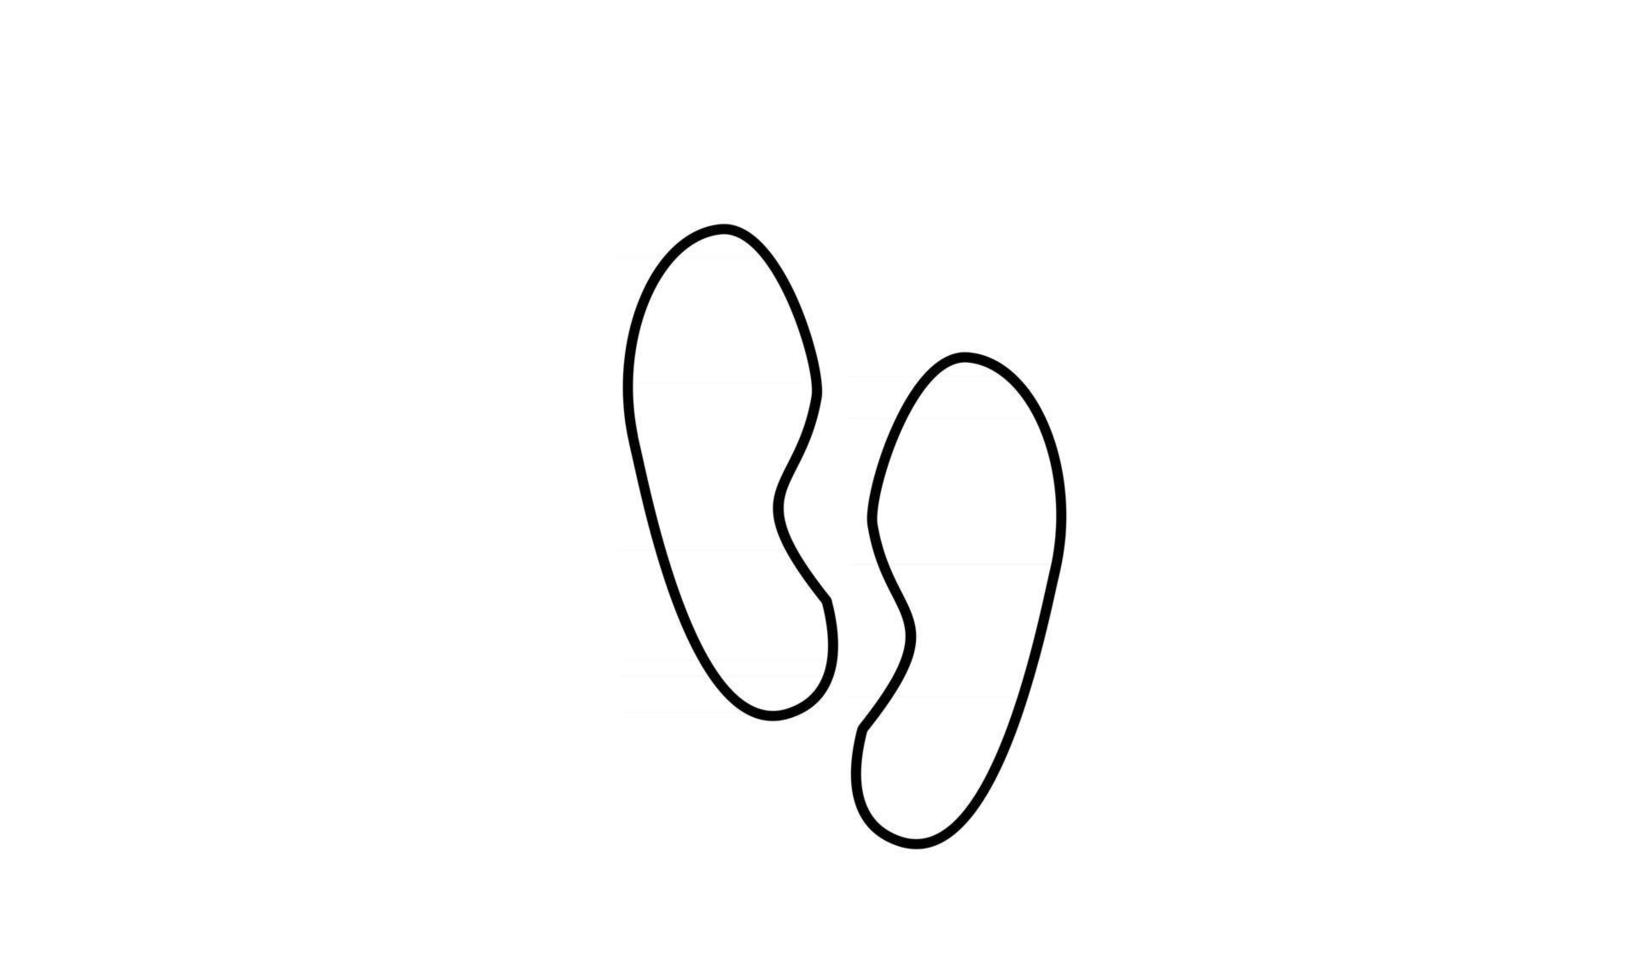 voetafdruk stap zwarte lijn pictogram witte achtergrond eenvoudig illustratie ontwerp vector